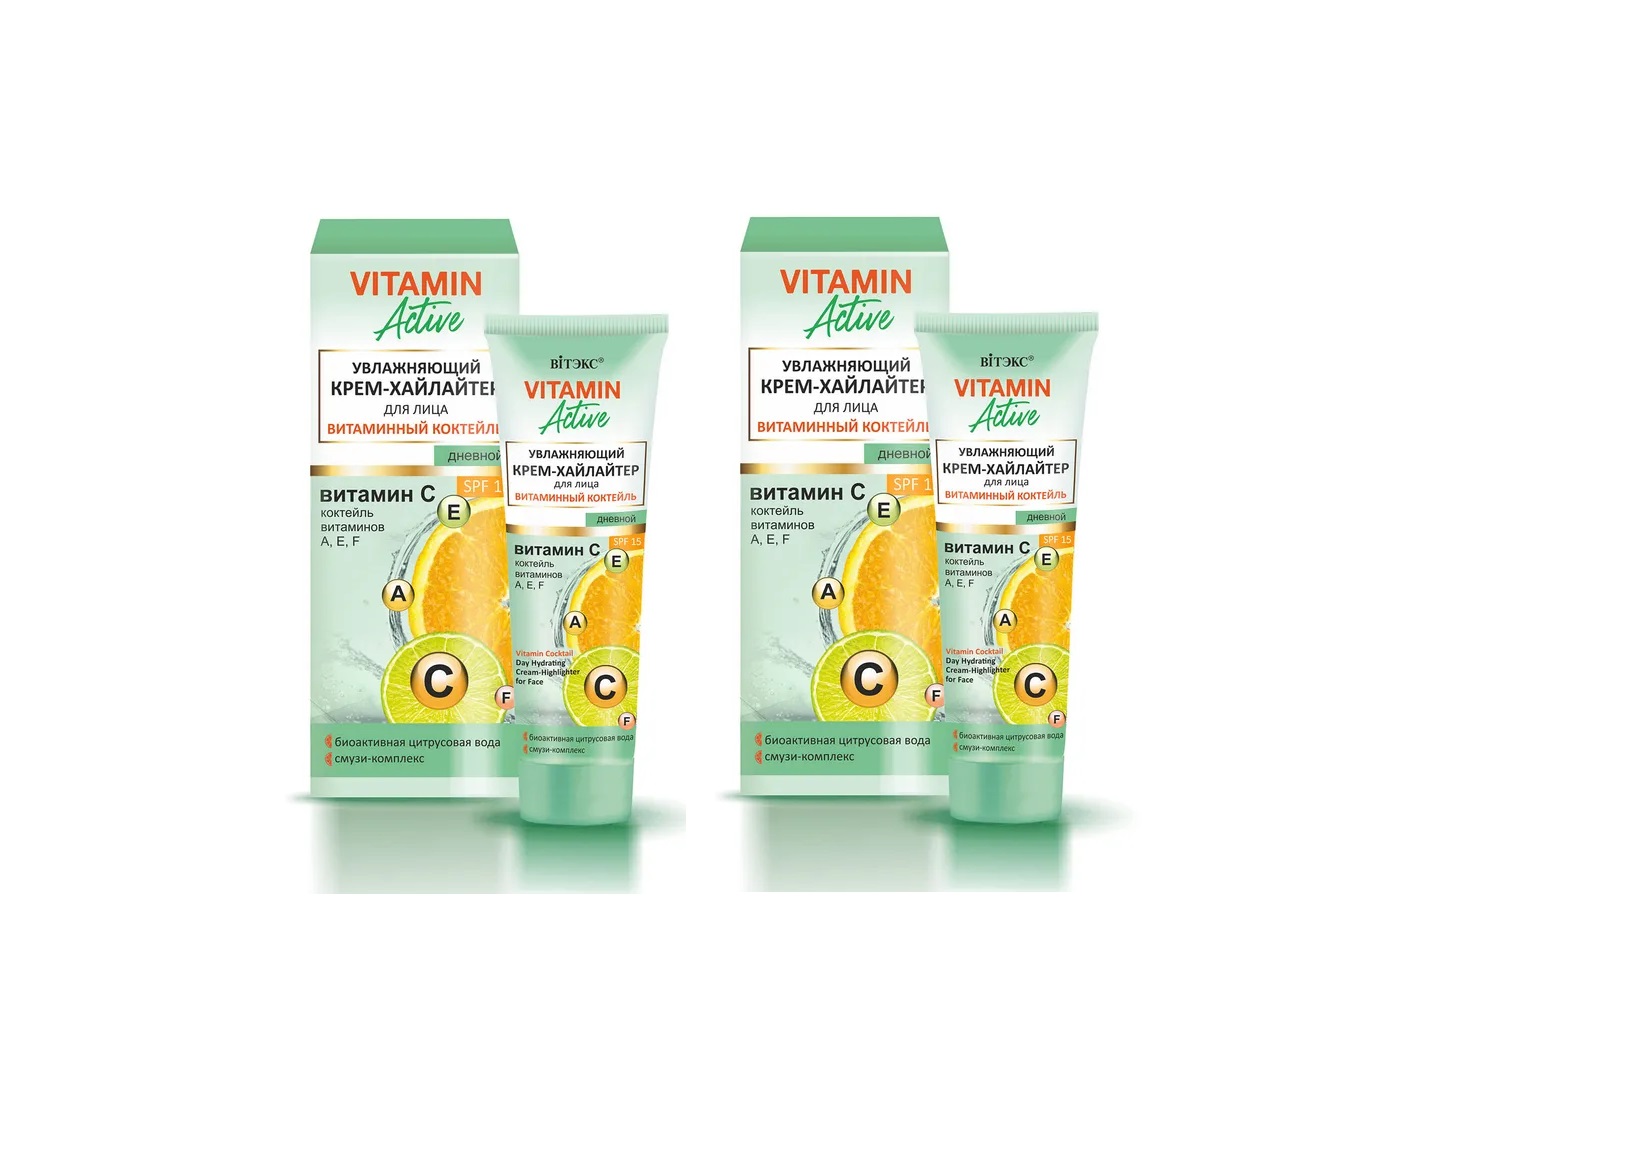 Крем-хайлайтер Витэкс для лица Vitamin Active Увлажняющий Дневной SPF 15 40 мл - 2 шт жидкий хайлайтер для лица и декольте лимитированная коллекция 13 мл